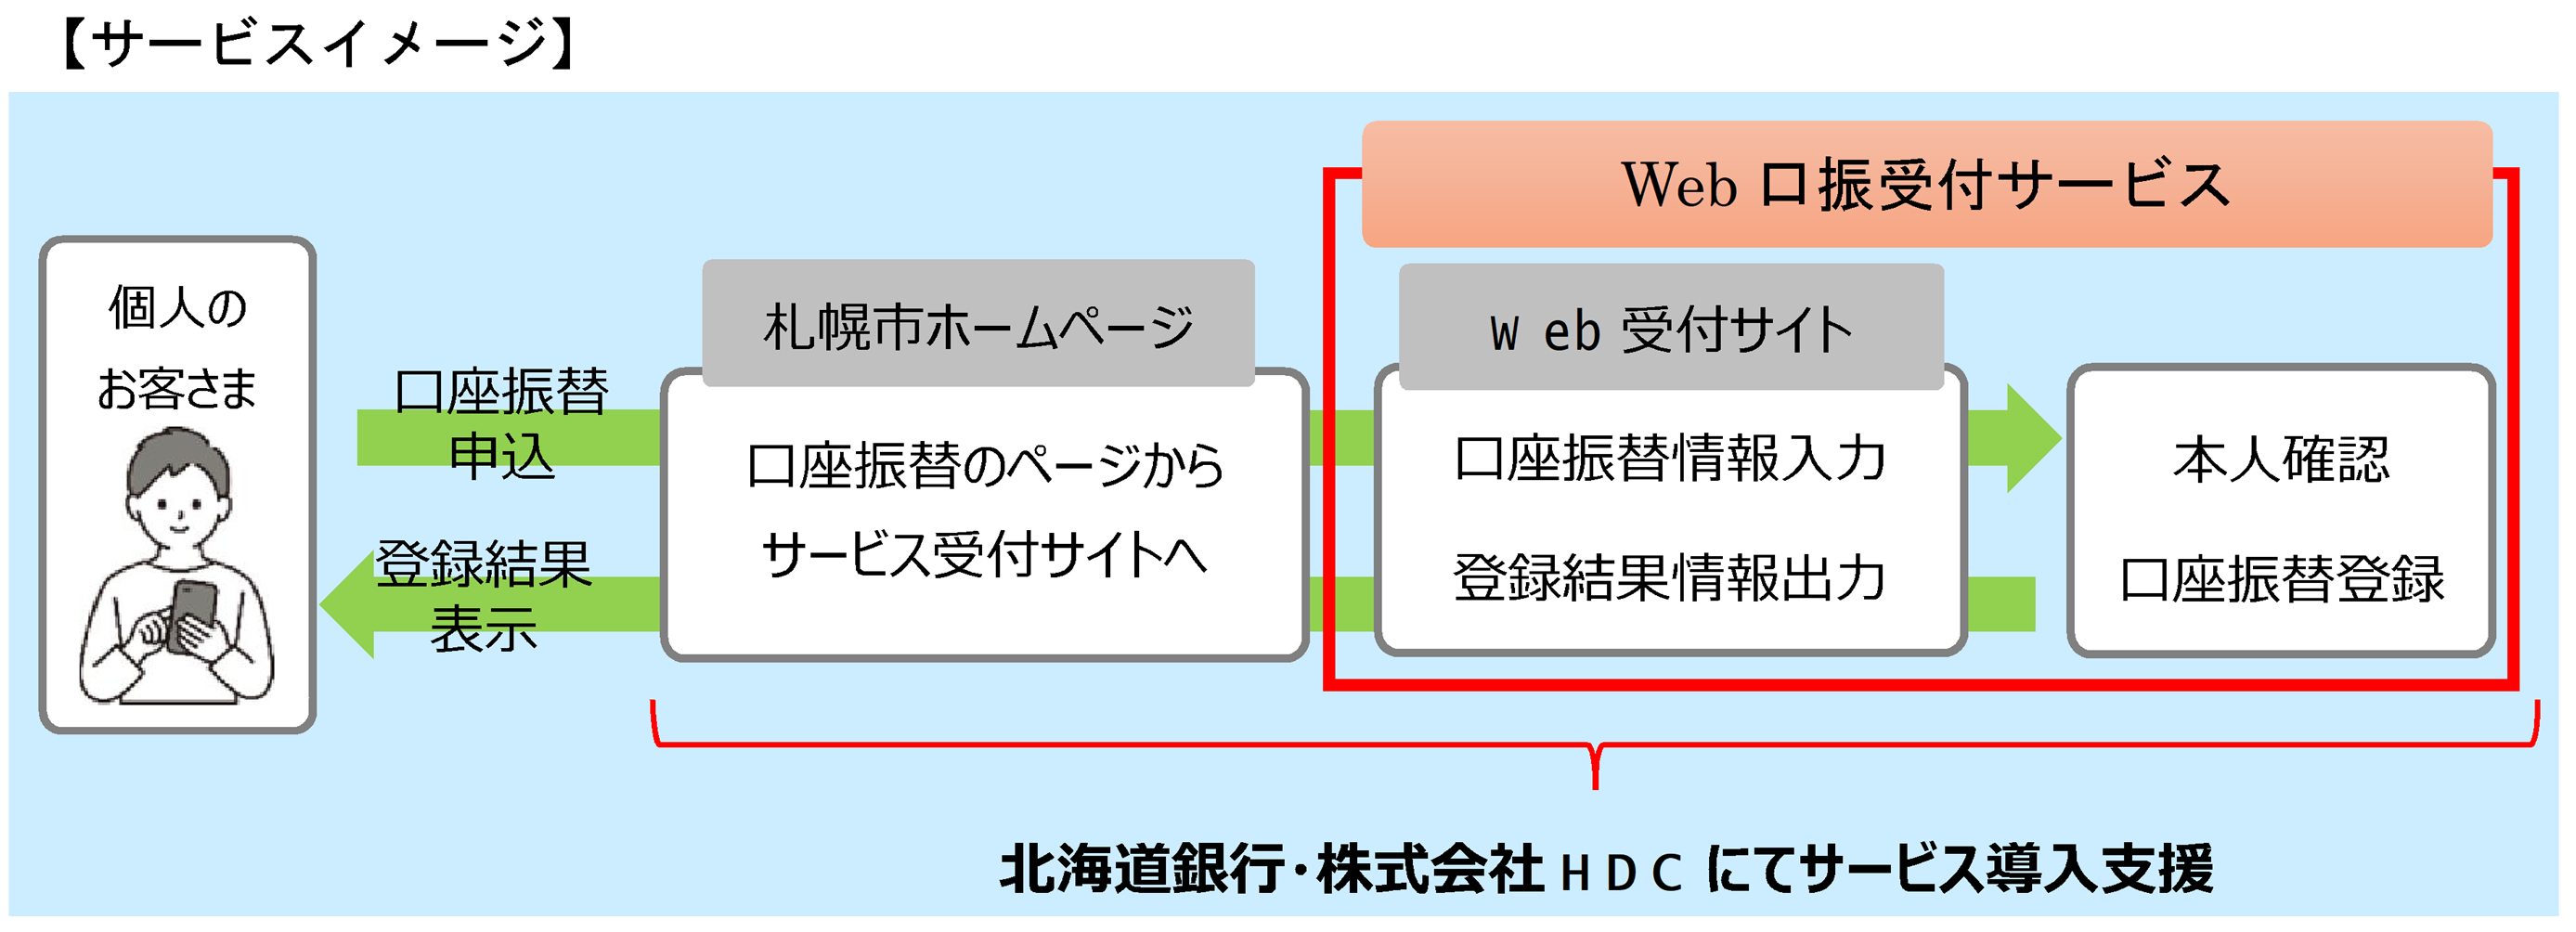 札幌市への「Web口振受付サービス」を導入しました。